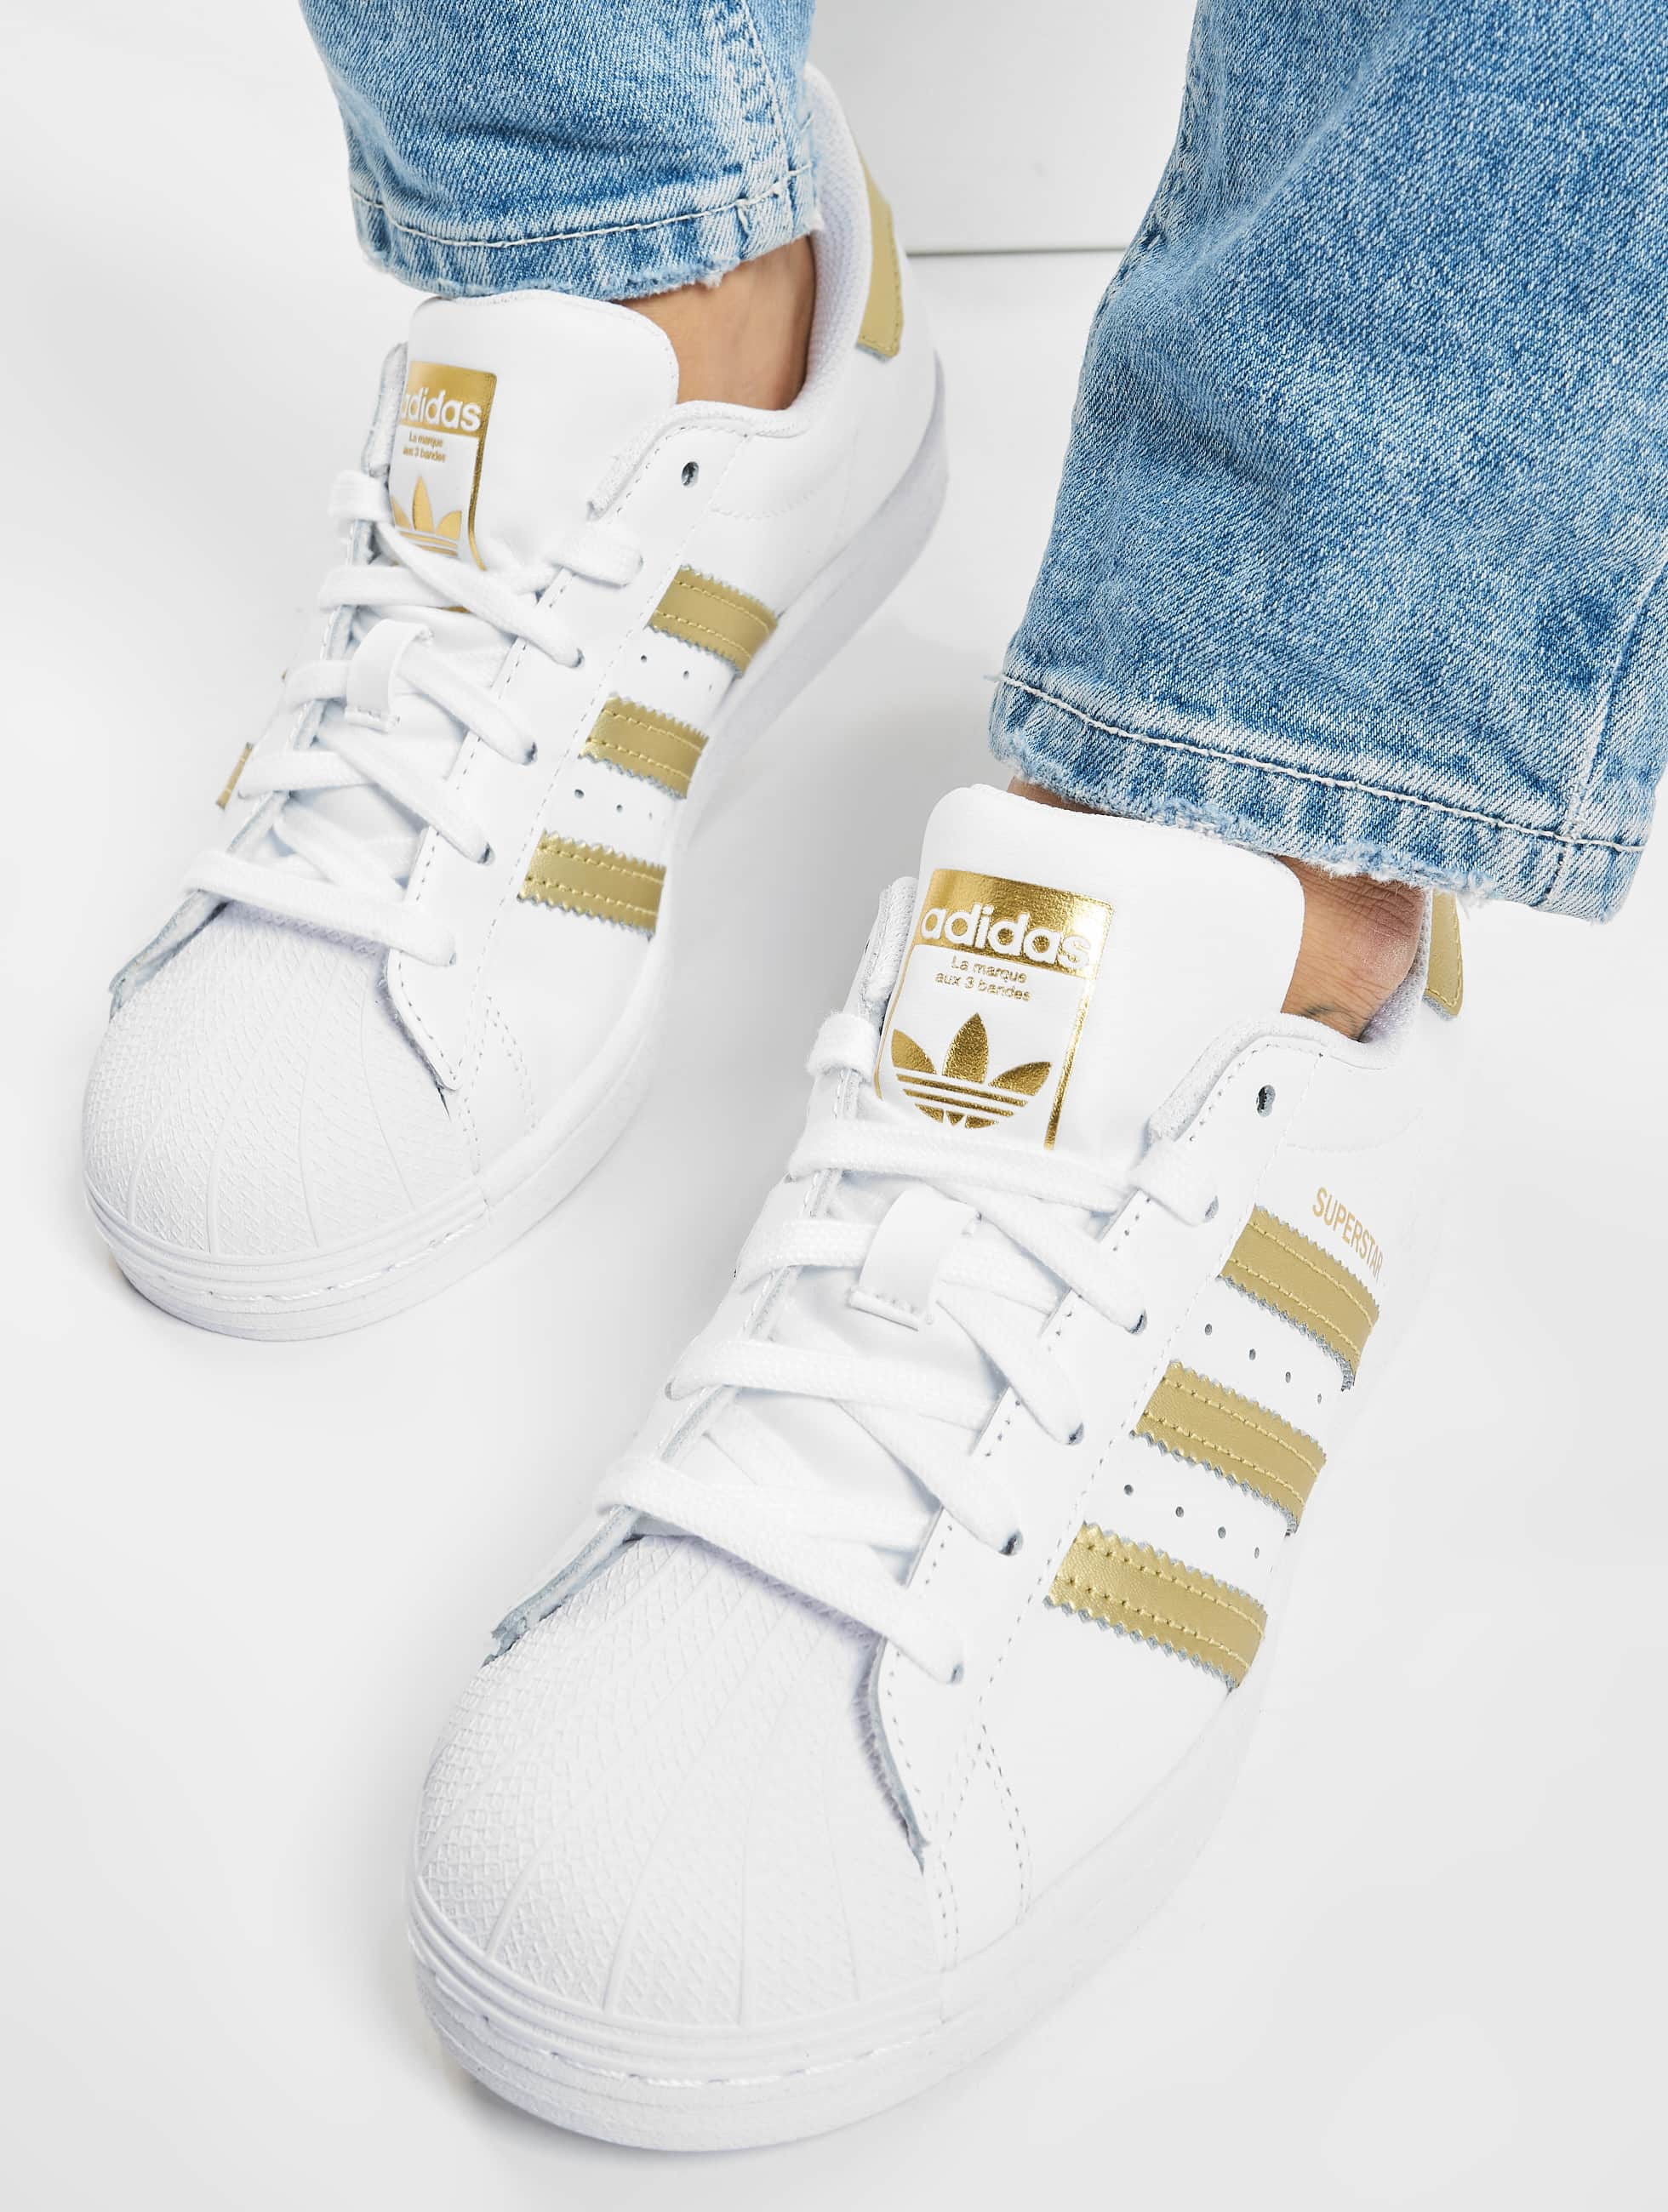 doel koken Lotsbestemming adidas Originals schoen / sneaker Superstar in wit 796085